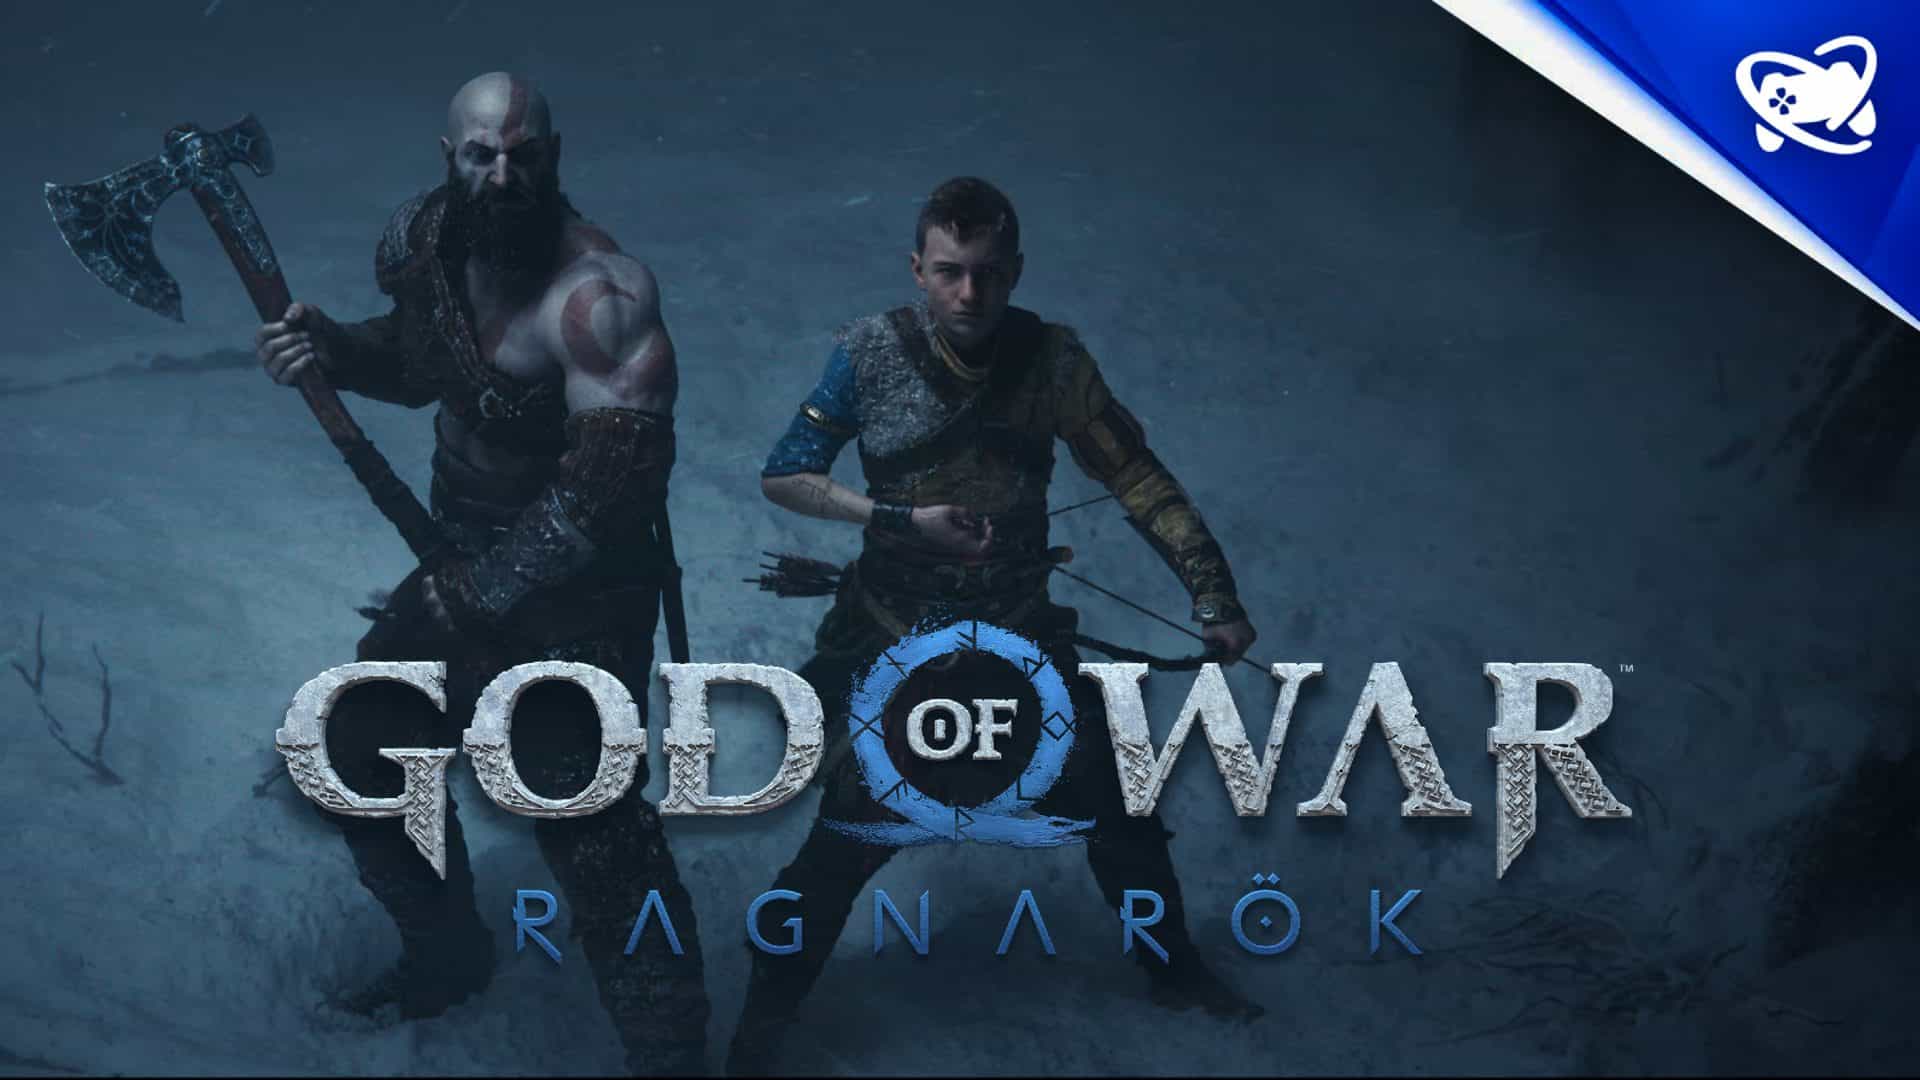 Jogo God of War: Ragnarok Edição de Lançamento- PS5